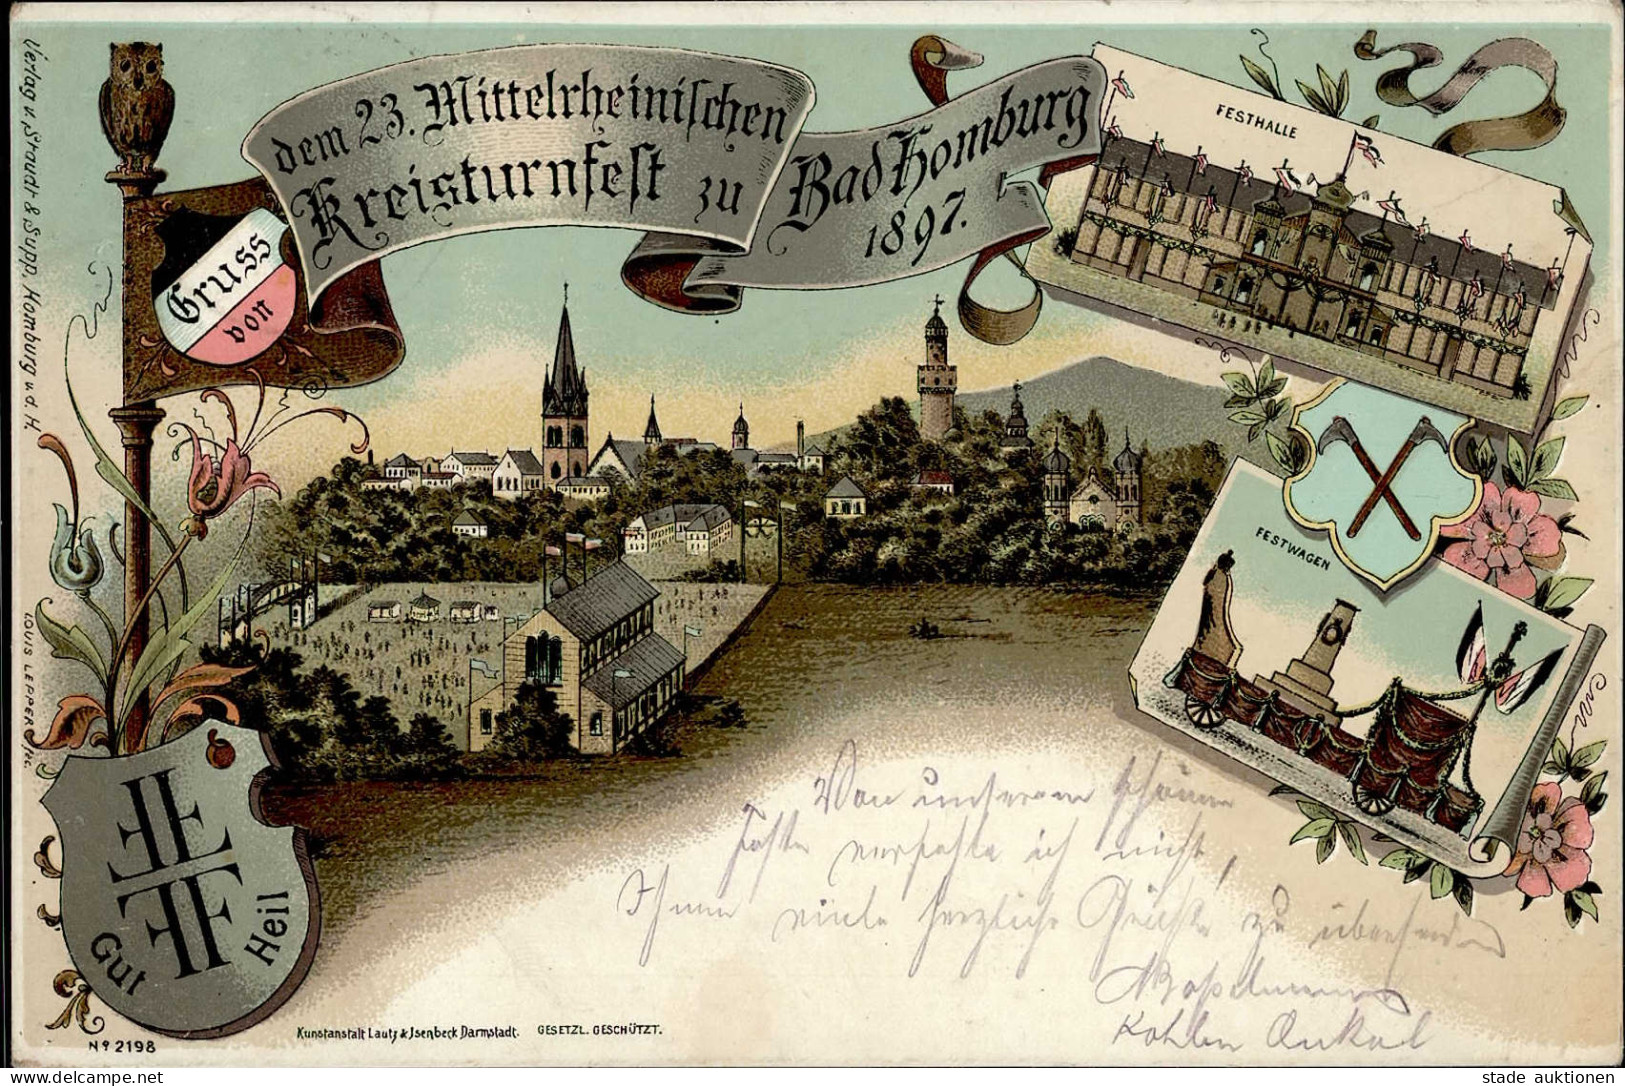 BAD HOMBURG - Gruss Vom 23.Mittlerh. KREISTURNFEST 1897 Mit S-o I-II Montagnes - Exhibitions